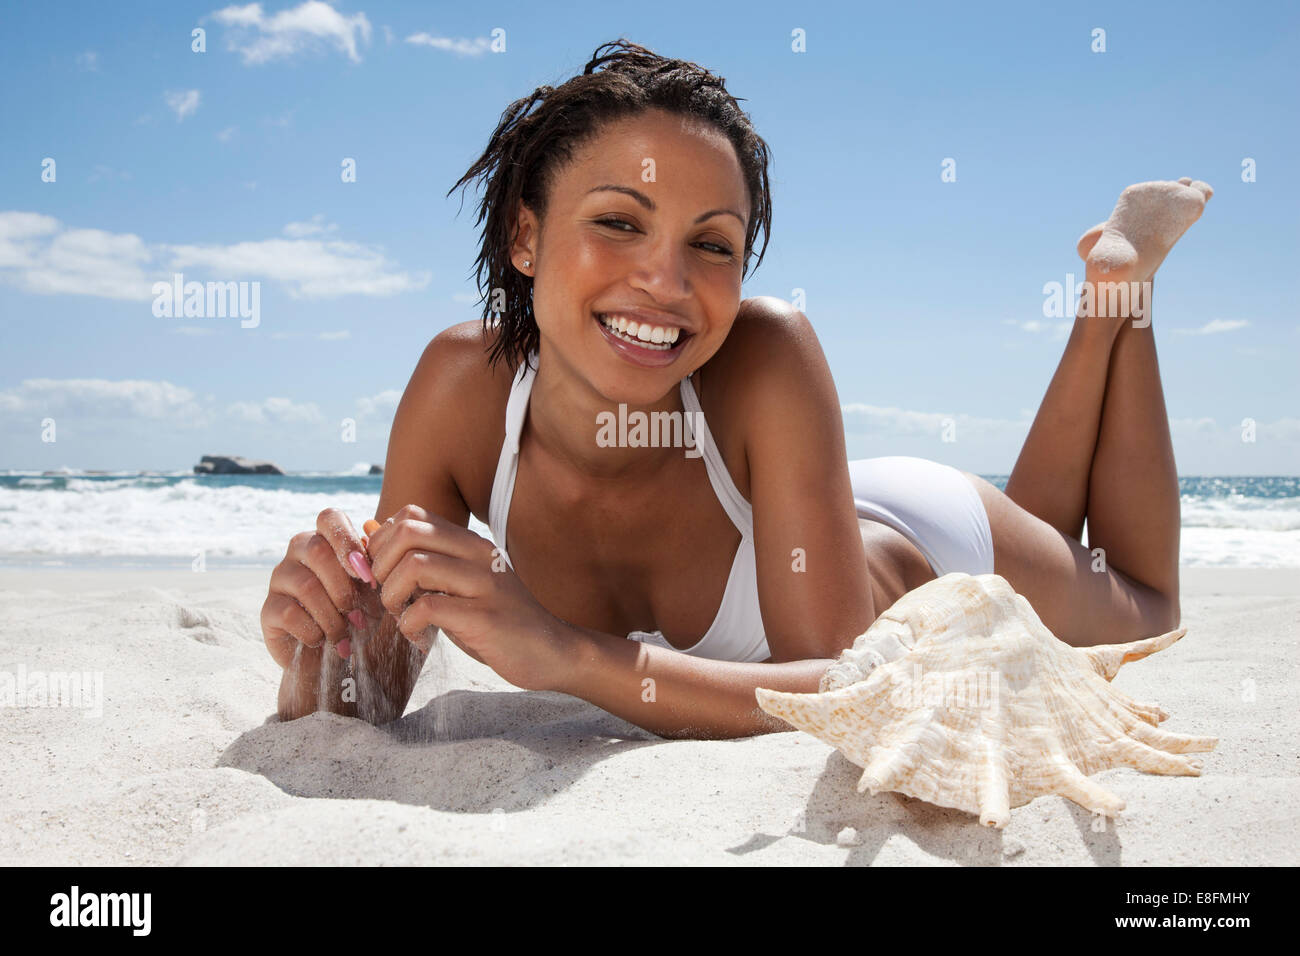 Portrait d'une femme souriante, située sur la plage, le Cap, le Cap occidental, Afrique du Sud Banque D'Images